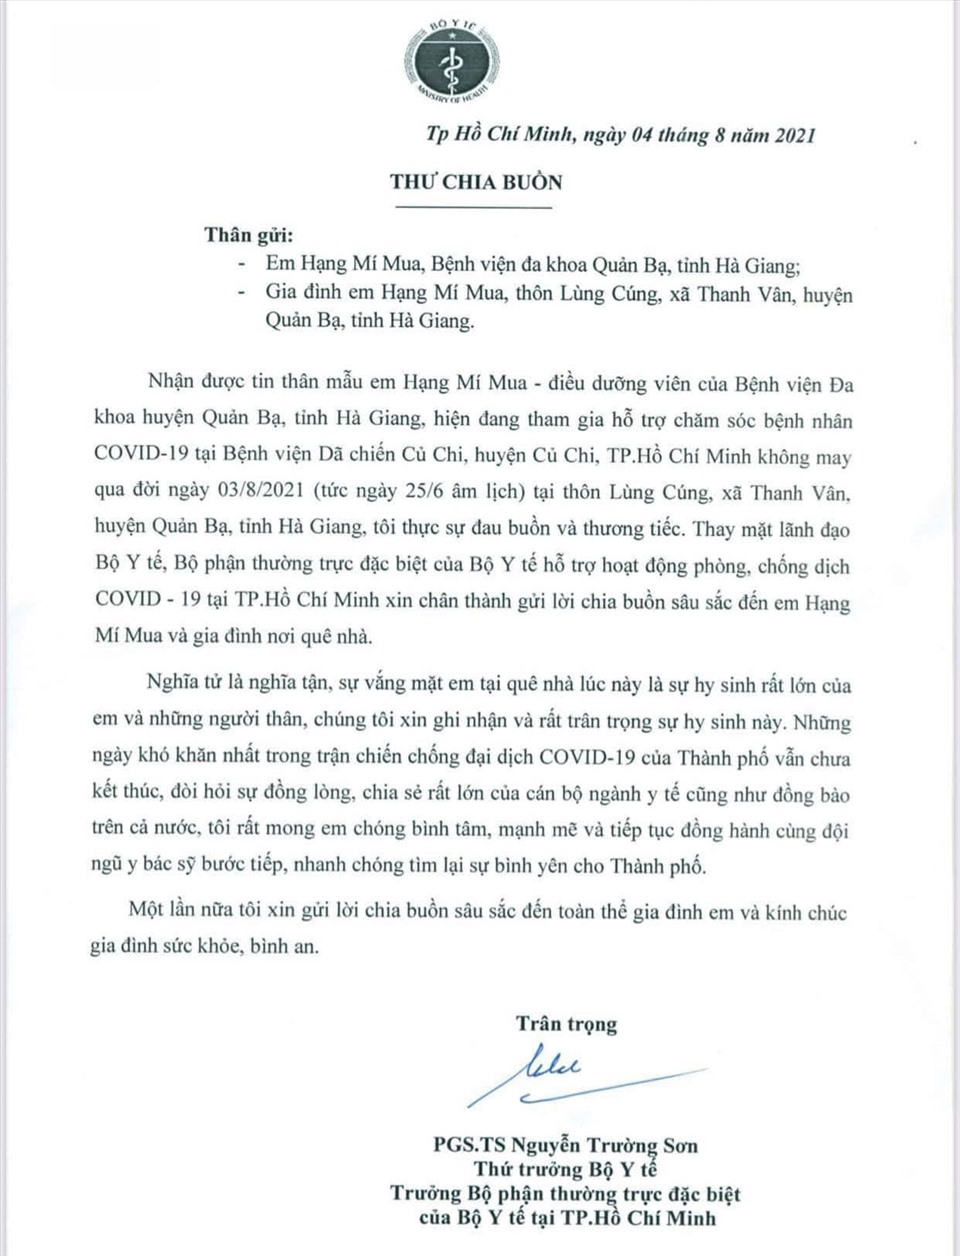 Thư chia buồn của Thứ trưởng Bộ Y tế Nguyễn Trường Sơn gửi y sĩ Hạng Mí Mua khi không thể về quê chịu tang mẹ.